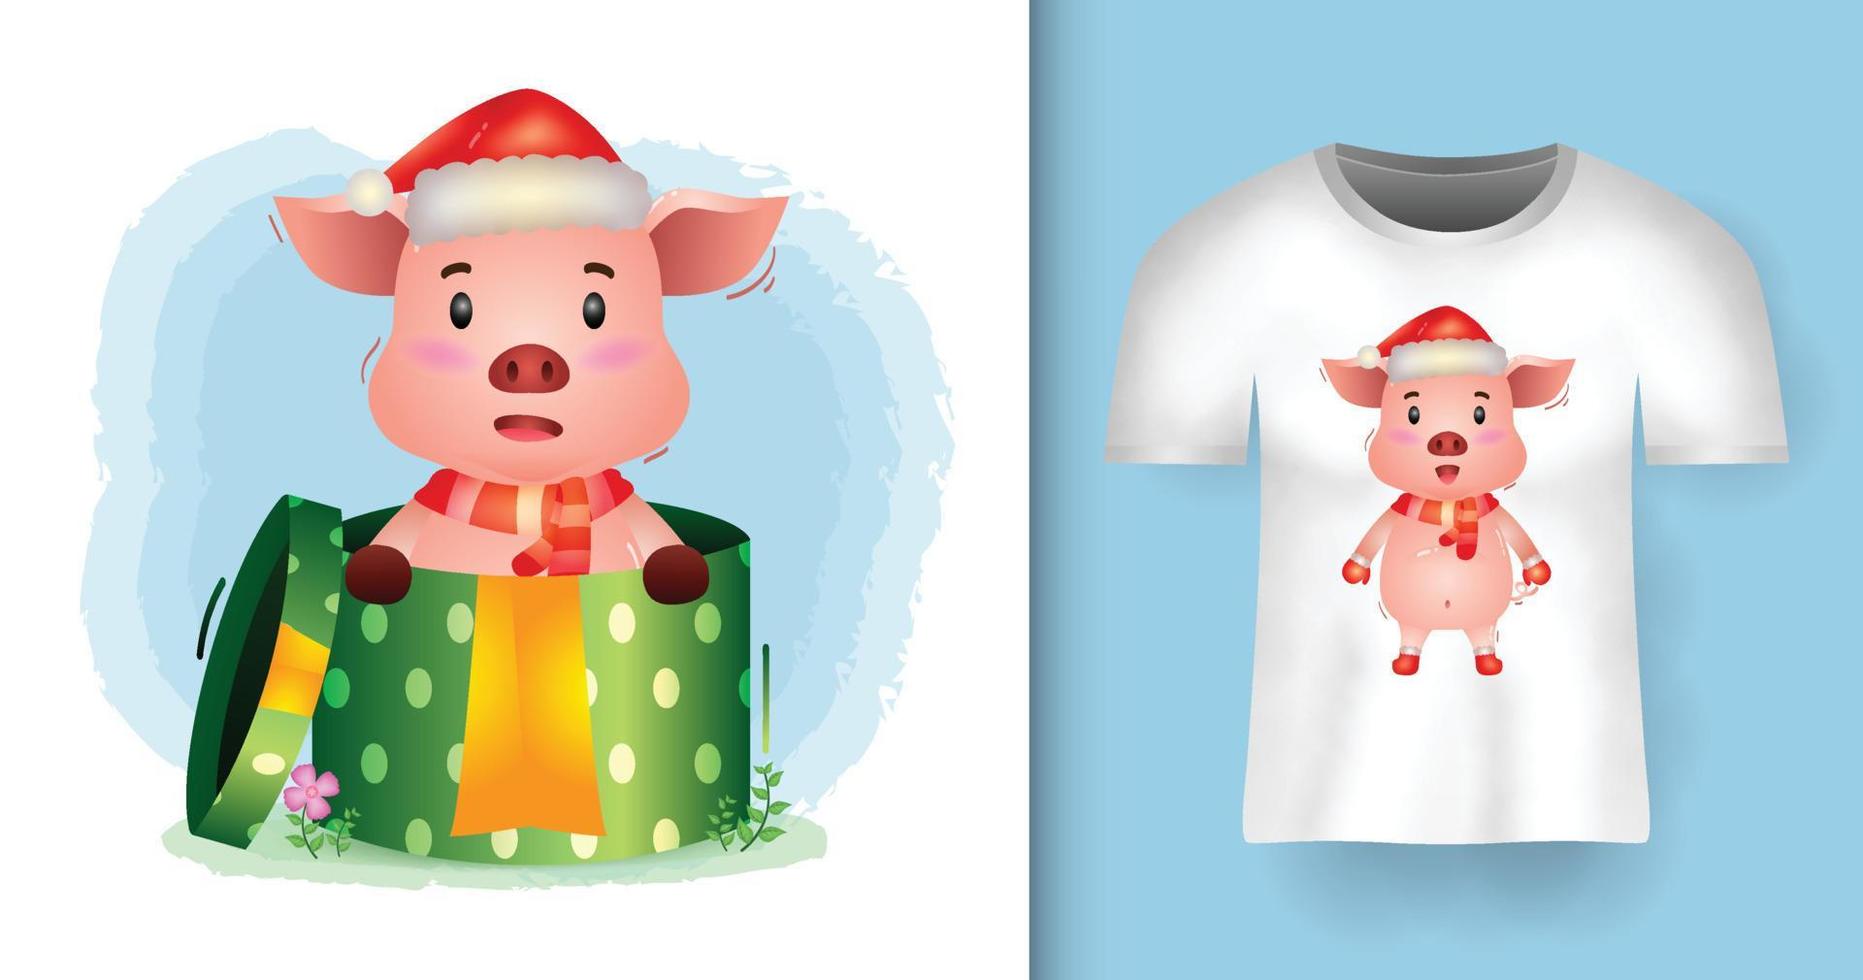 söta gris julkaraktärer med tomtemössa och halsduk i presentförpackningen med t-shirtdesign vektor